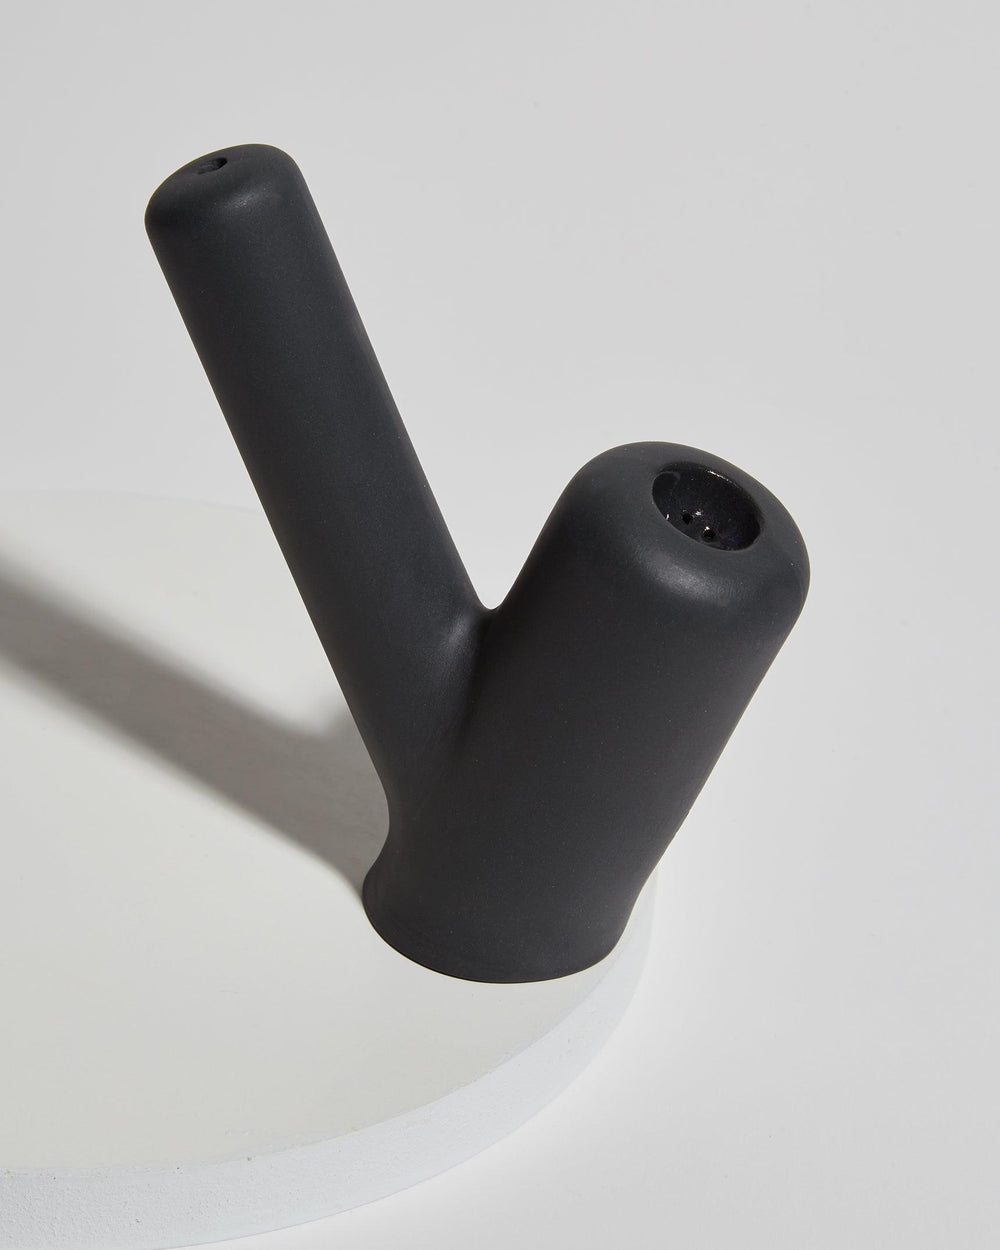 Jaunt Branch Ceramic hand pipe in slate black.